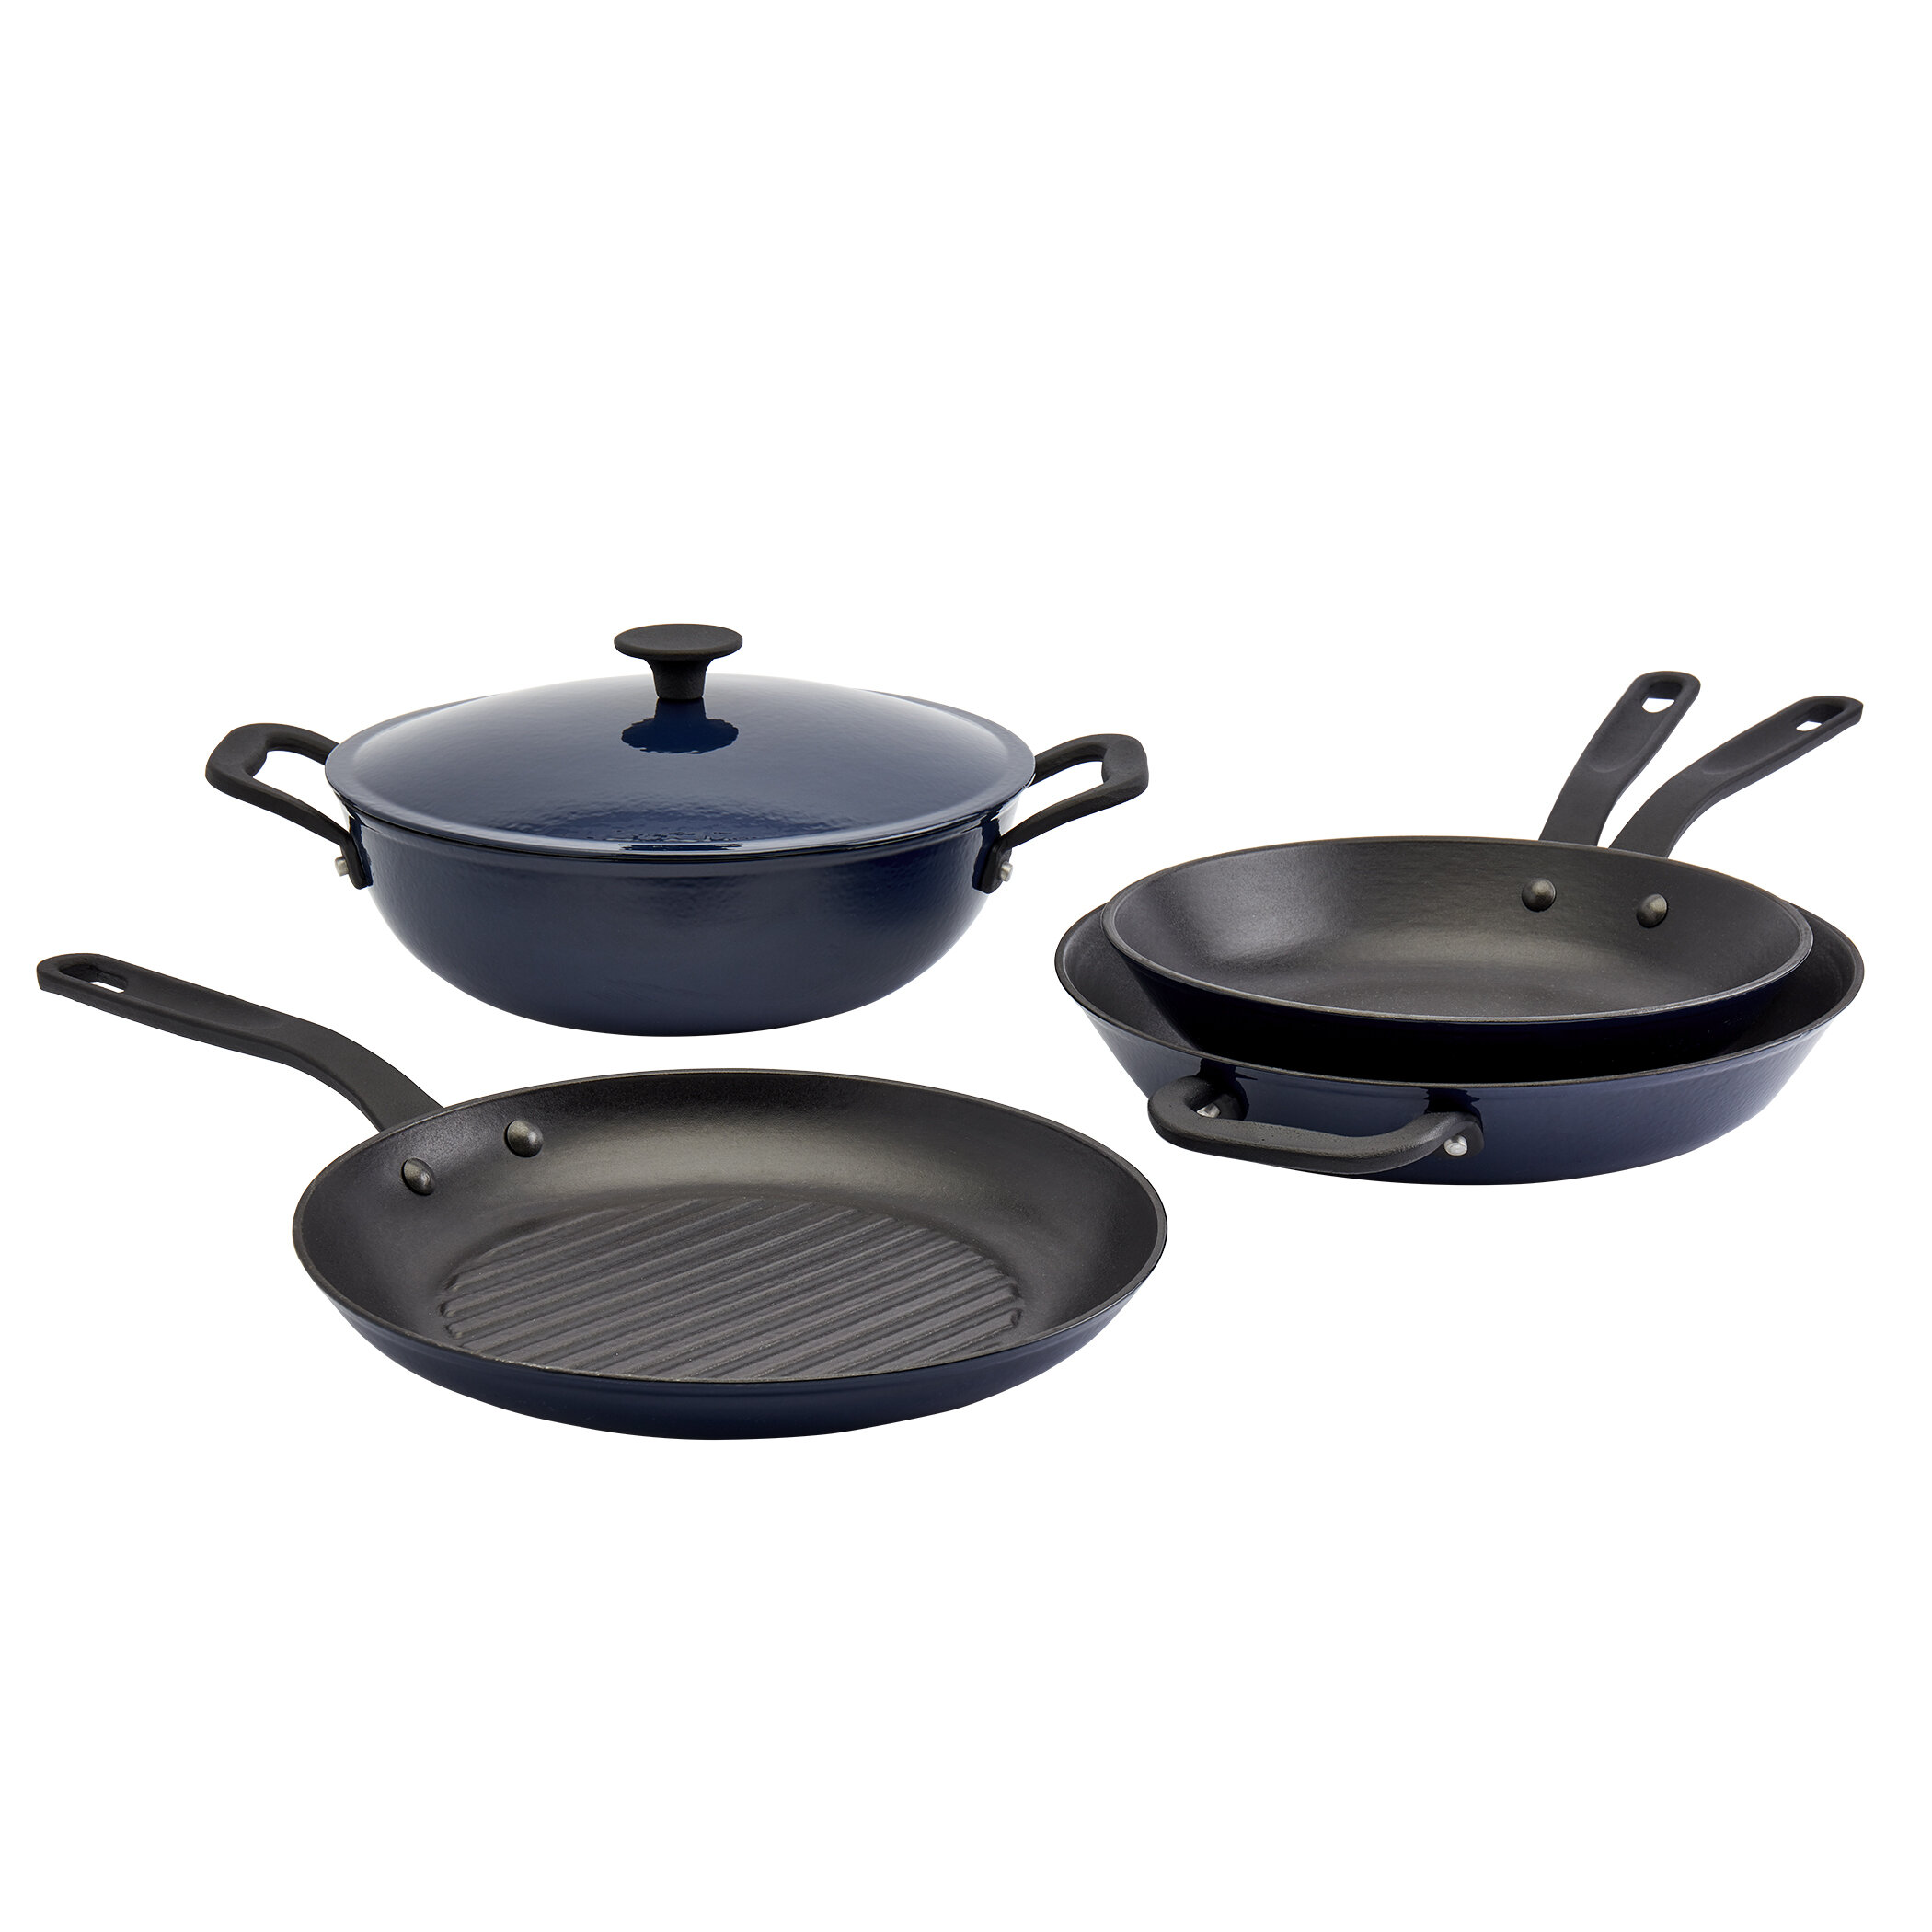 https://assets.wfcdn.com/im/86274032/compr-r85/1816/181642835/cast-lite-cooking-5-piece-enameled-cast-iron-cookware-set.jpg